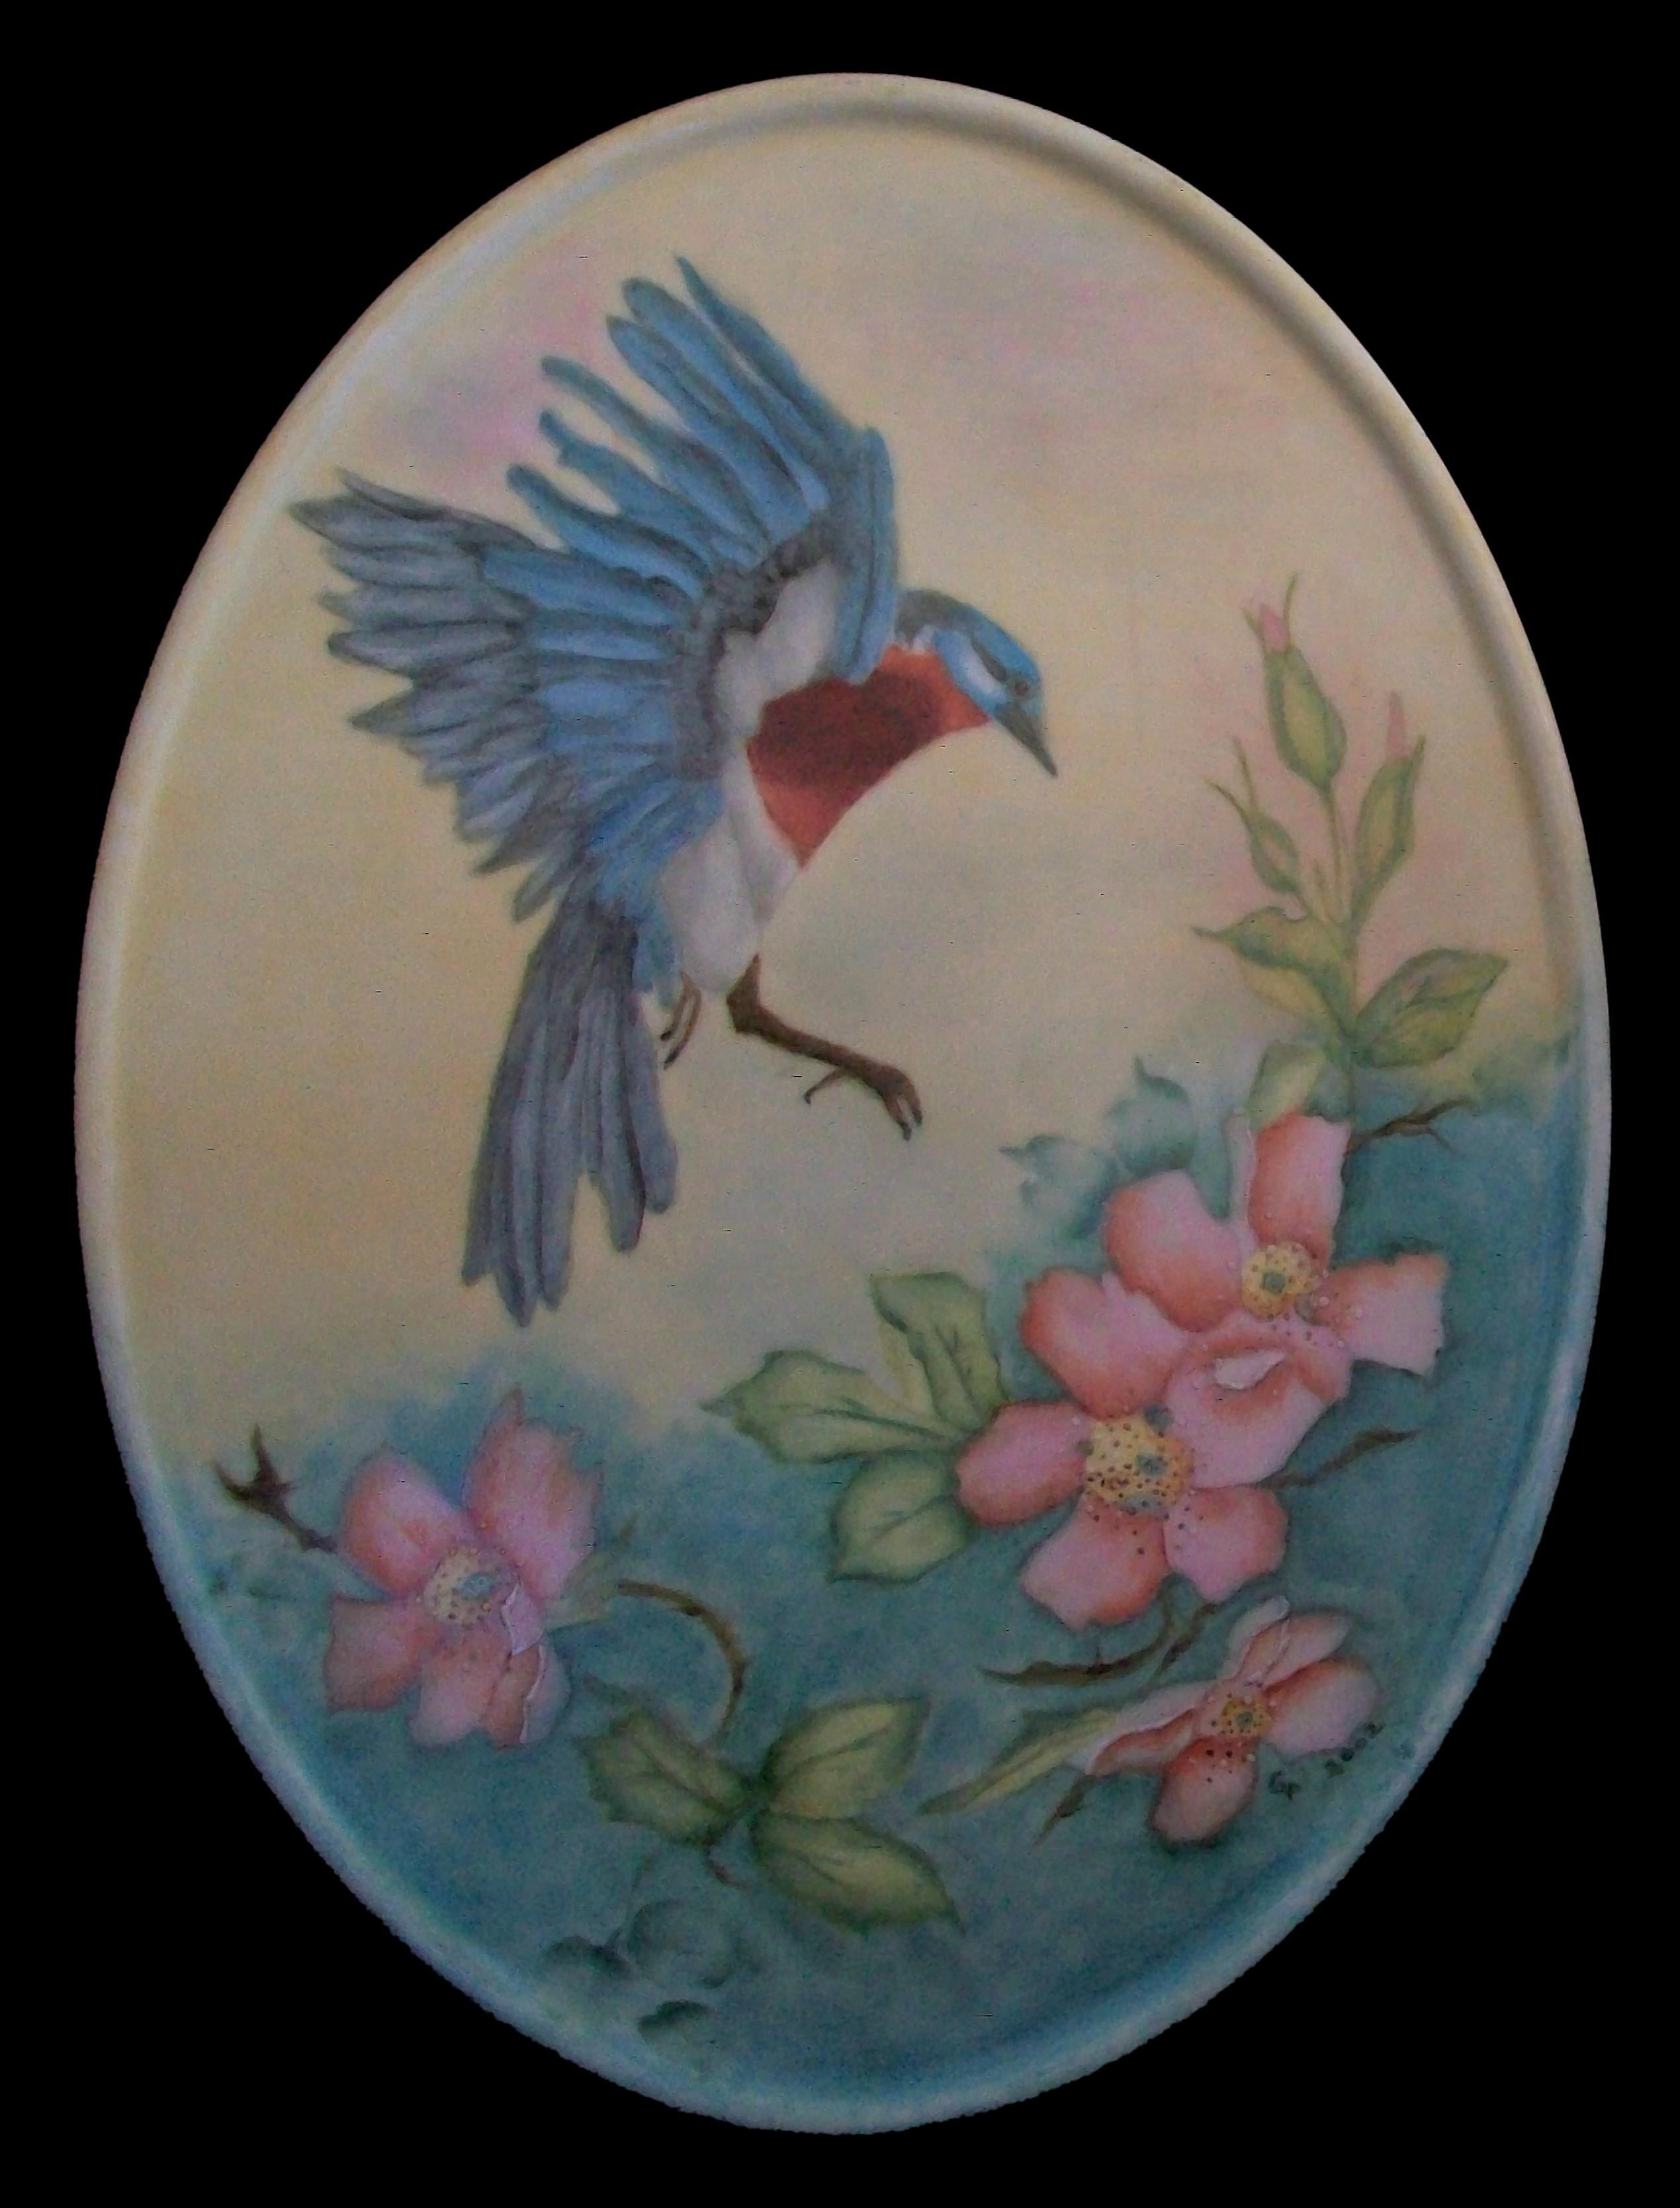 DRESDEN - Plaque en porcelaine représentant un oiseau bleu et des fleurs - belle et fine peinture à la main avec un subtil fond ombragé - signée GP et datée en bas à droite - marque imprimée au dos (telle que photographiée - couronne au-dessus du